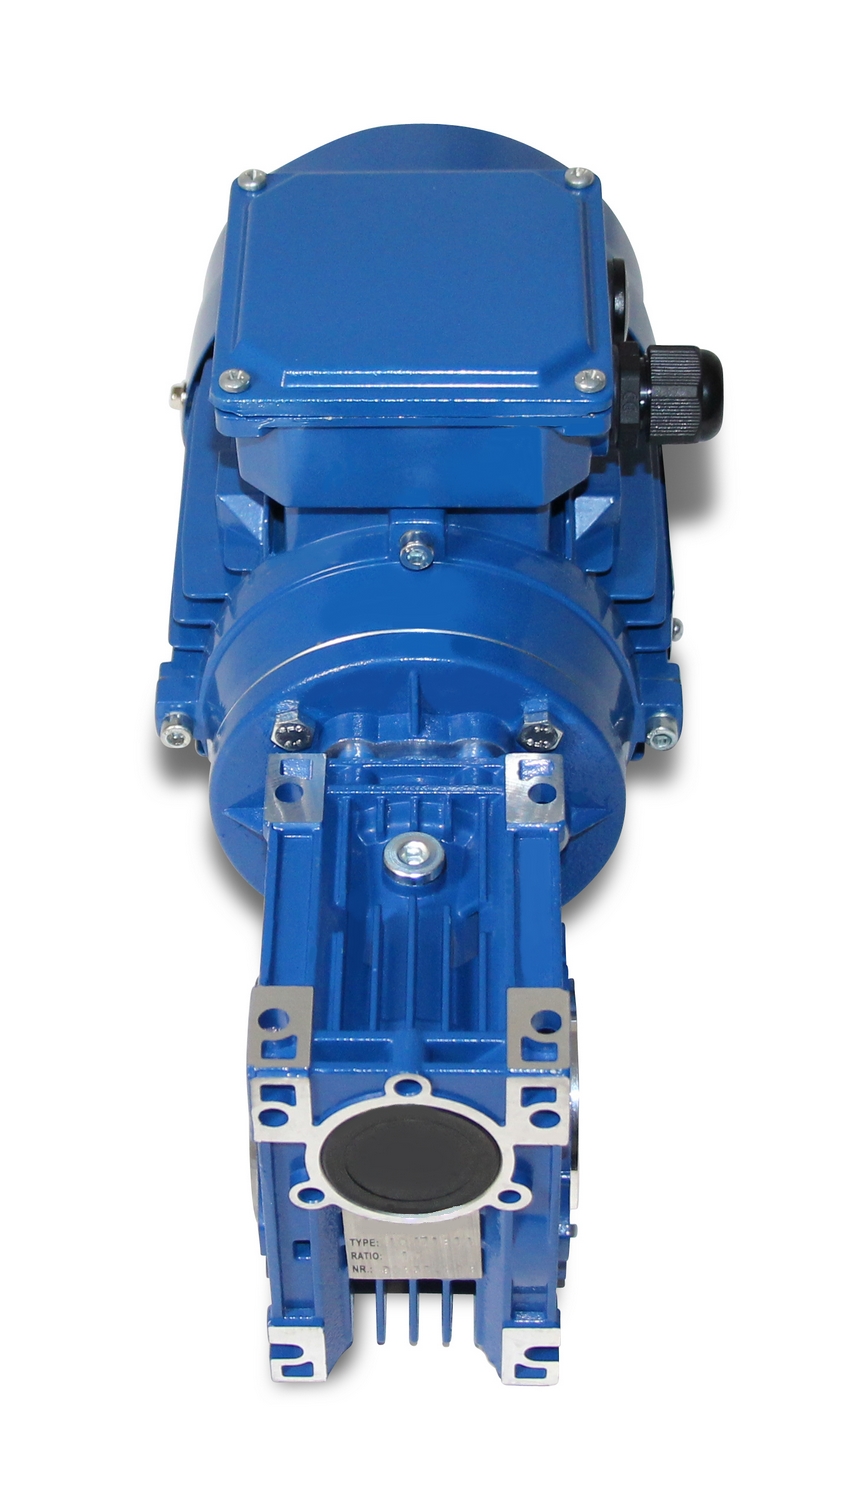 CMRV 040-712-4 - 0,37 kW - 70 Upm- Schneckengetriebemotor